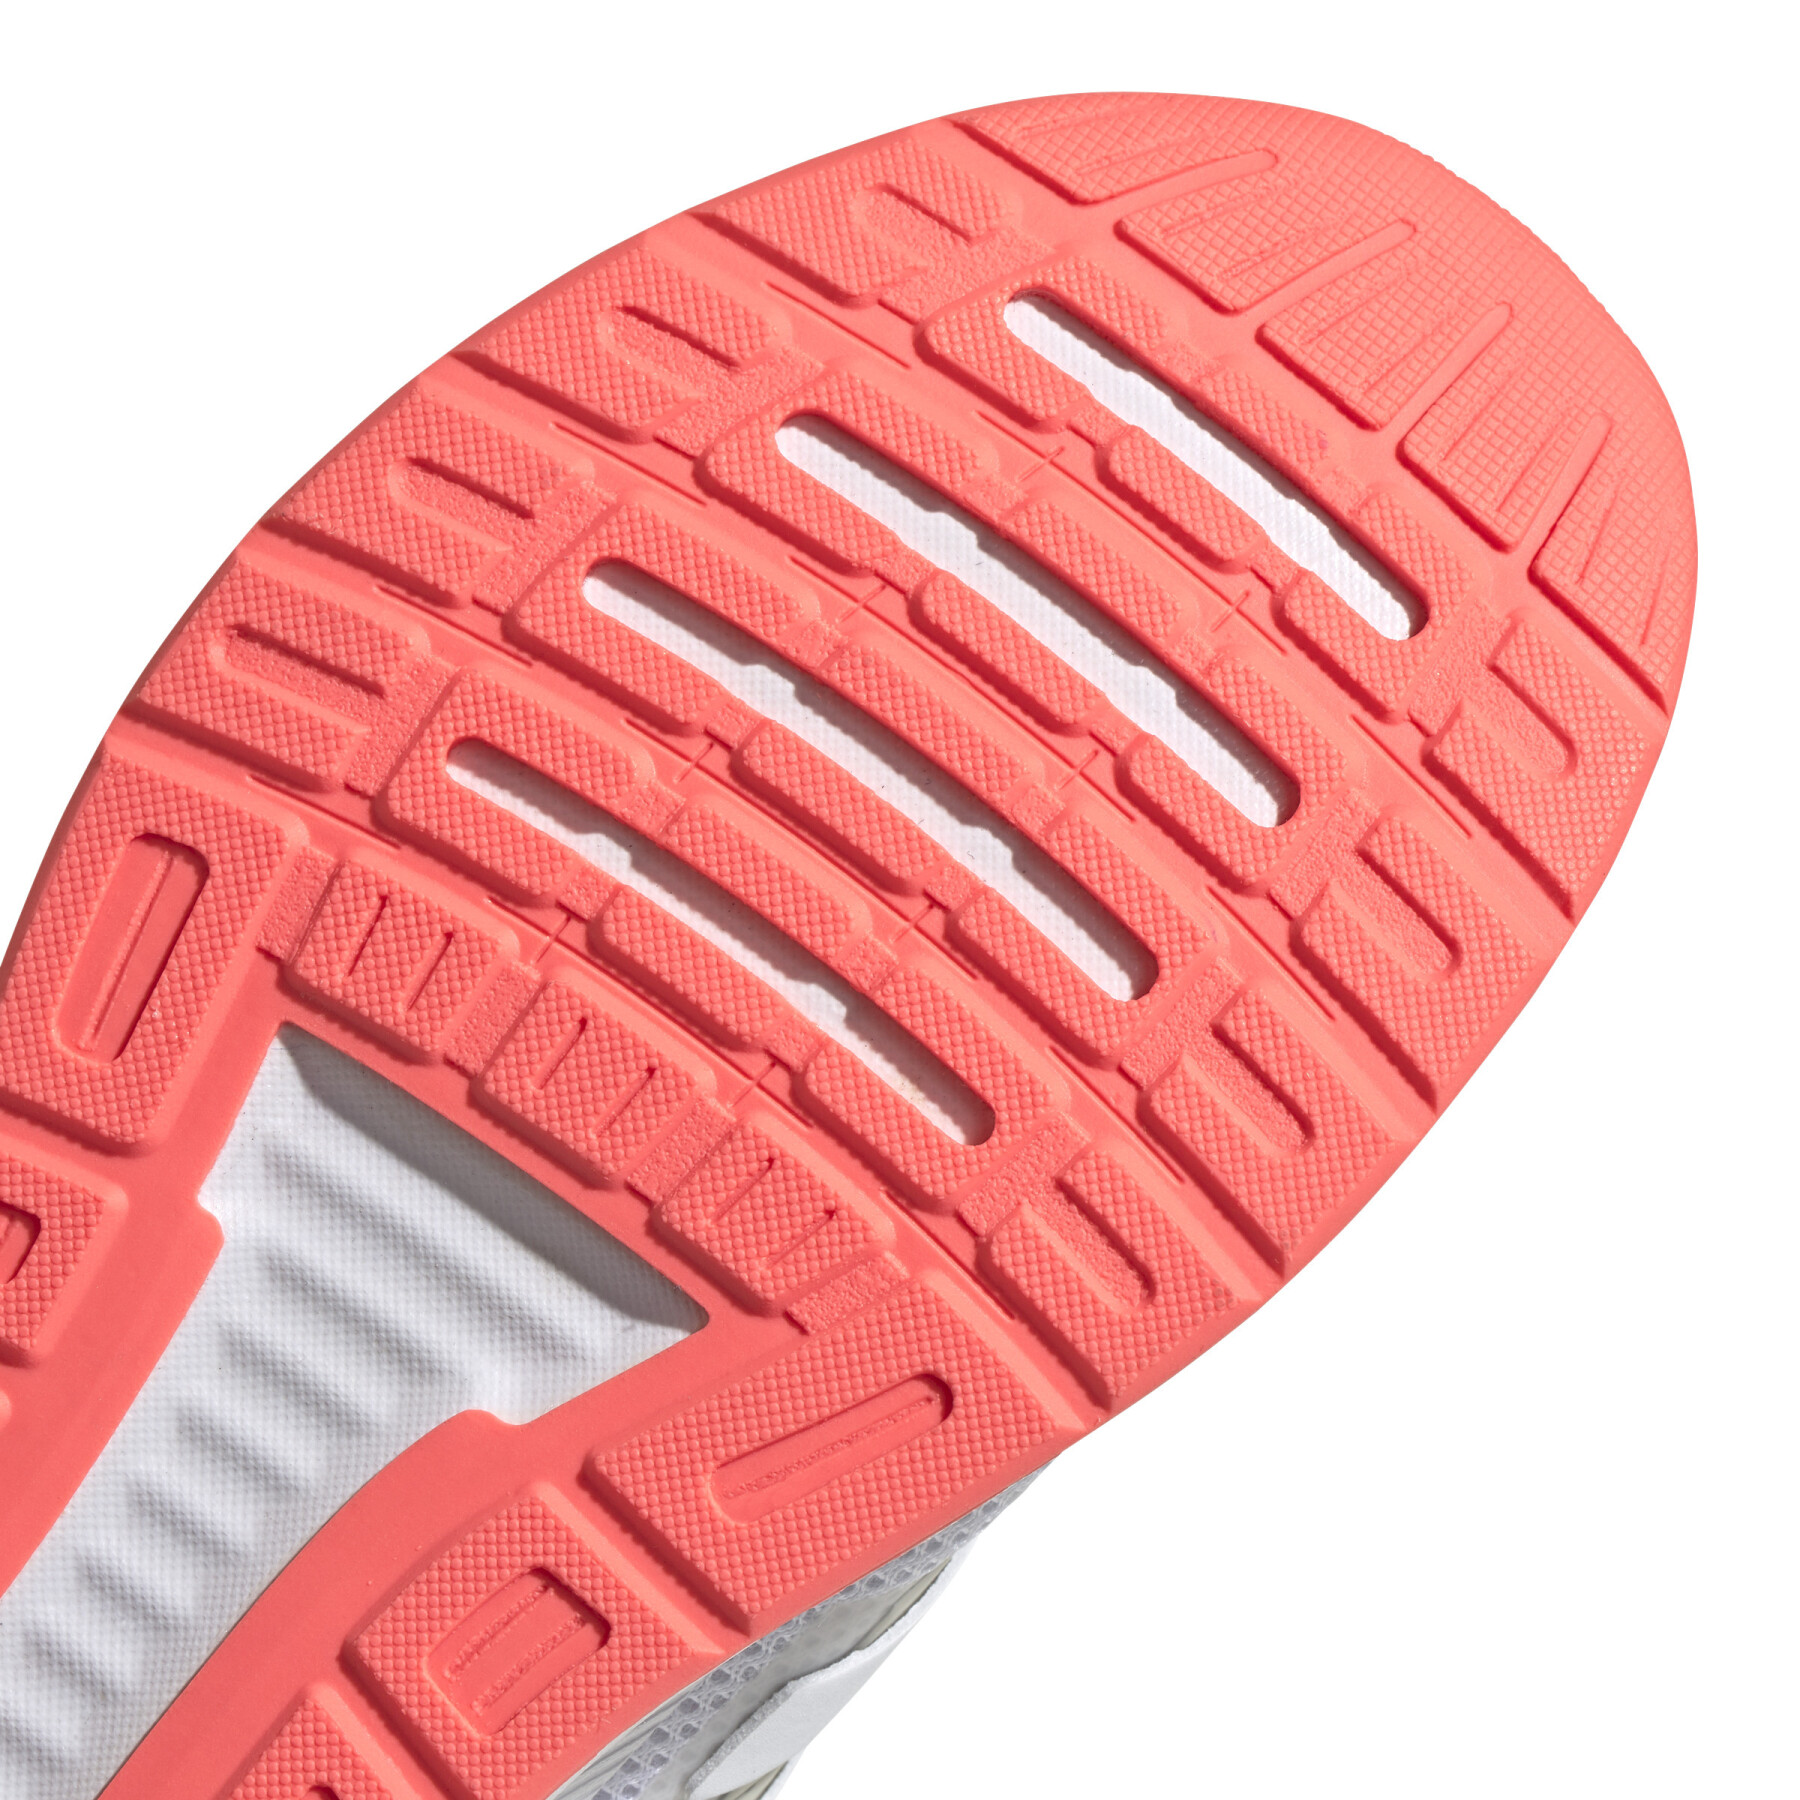 Chaussures de running femme adidas Runfalcon